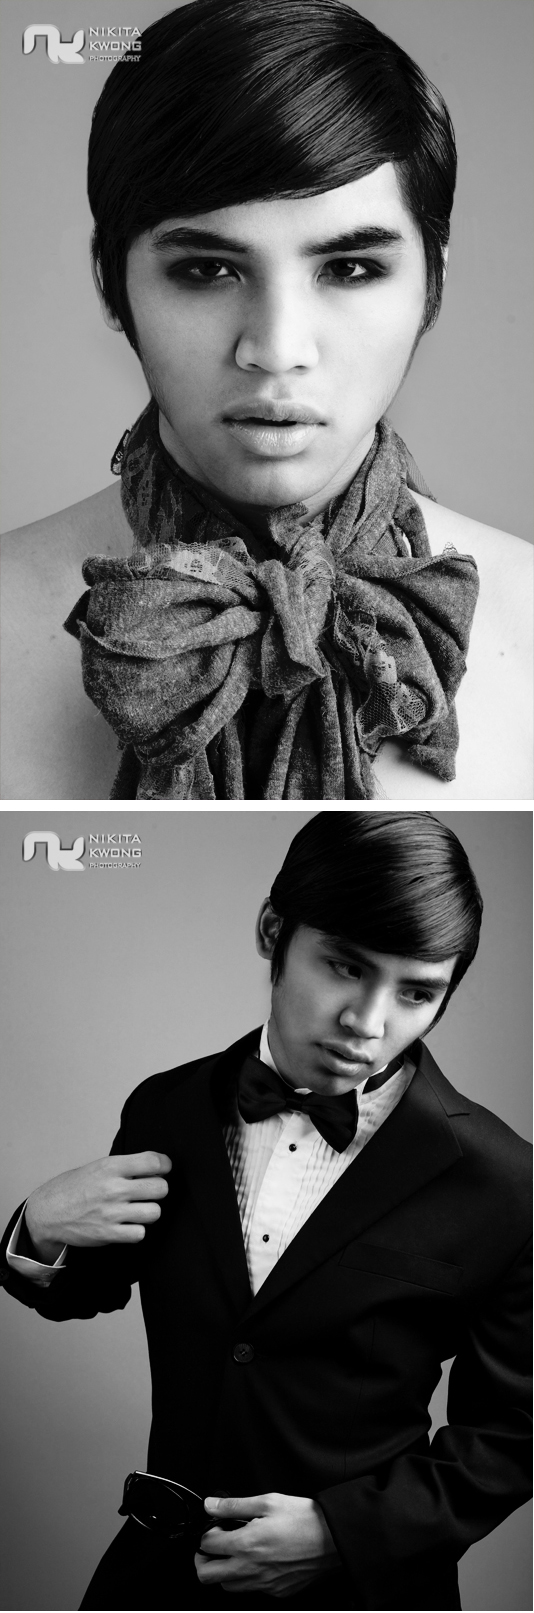 Female model photo shoot of NikitaKwong Photography in NY